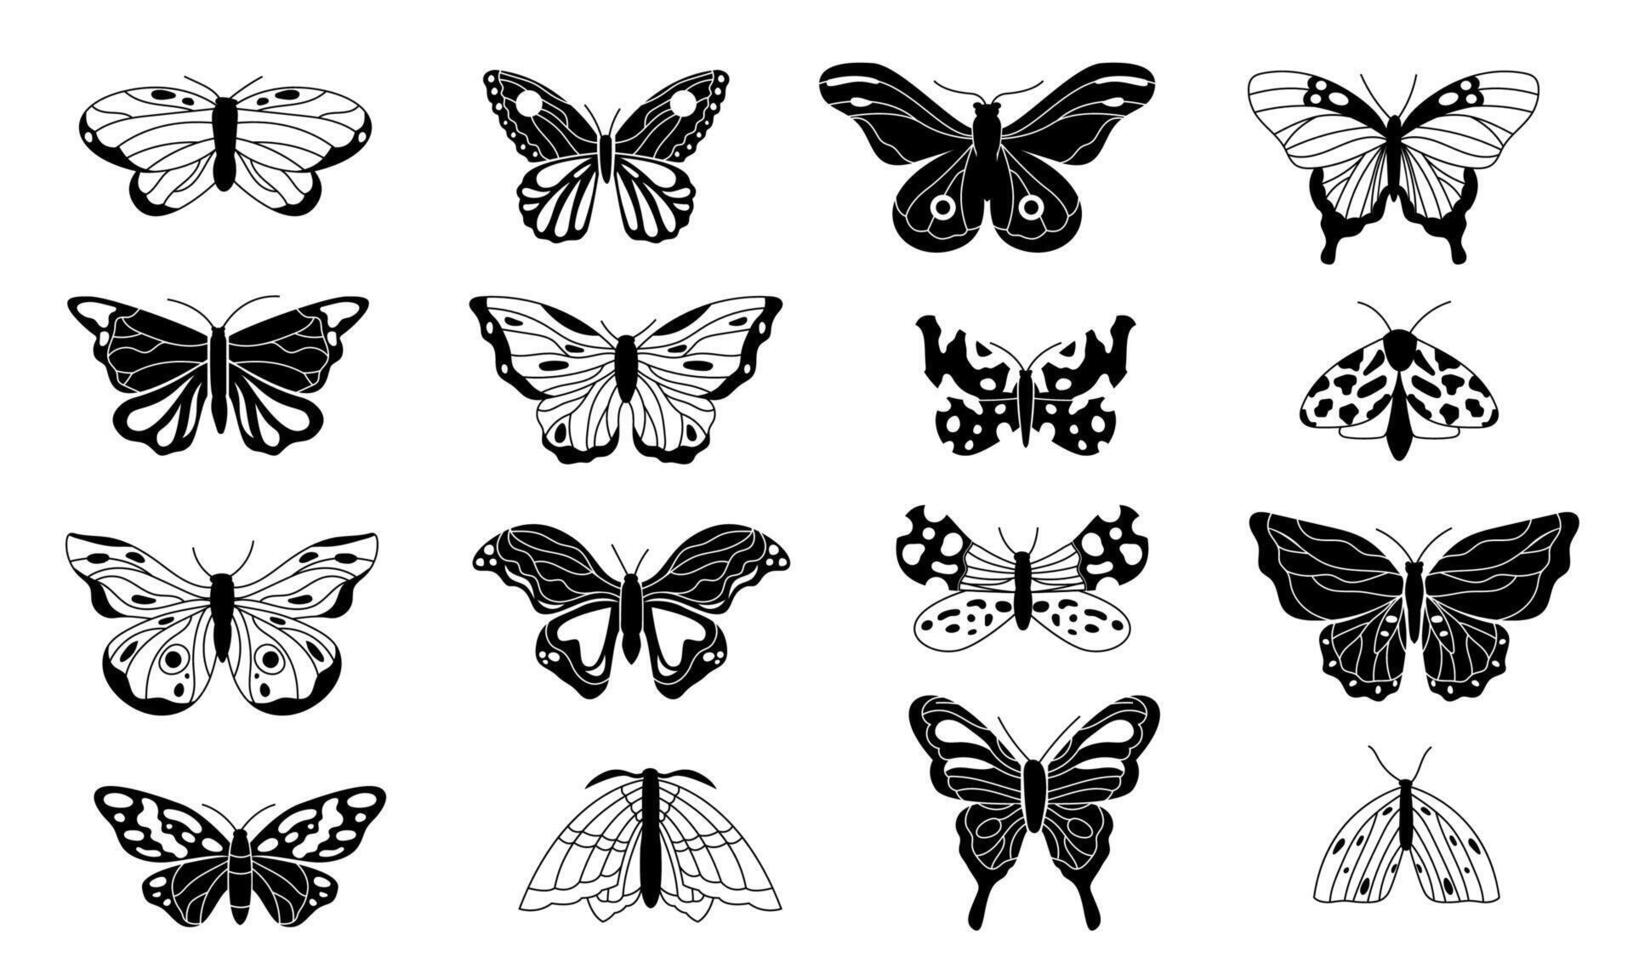 Schmetterlinge Silhouetten. schwarz Skizzen von fliegend geflügelt Insekten, einfarbig Gekritzel Schmetterling Konturen zum Tätowierung, Gravur, Dekoration. Vektor isoliert einstellen